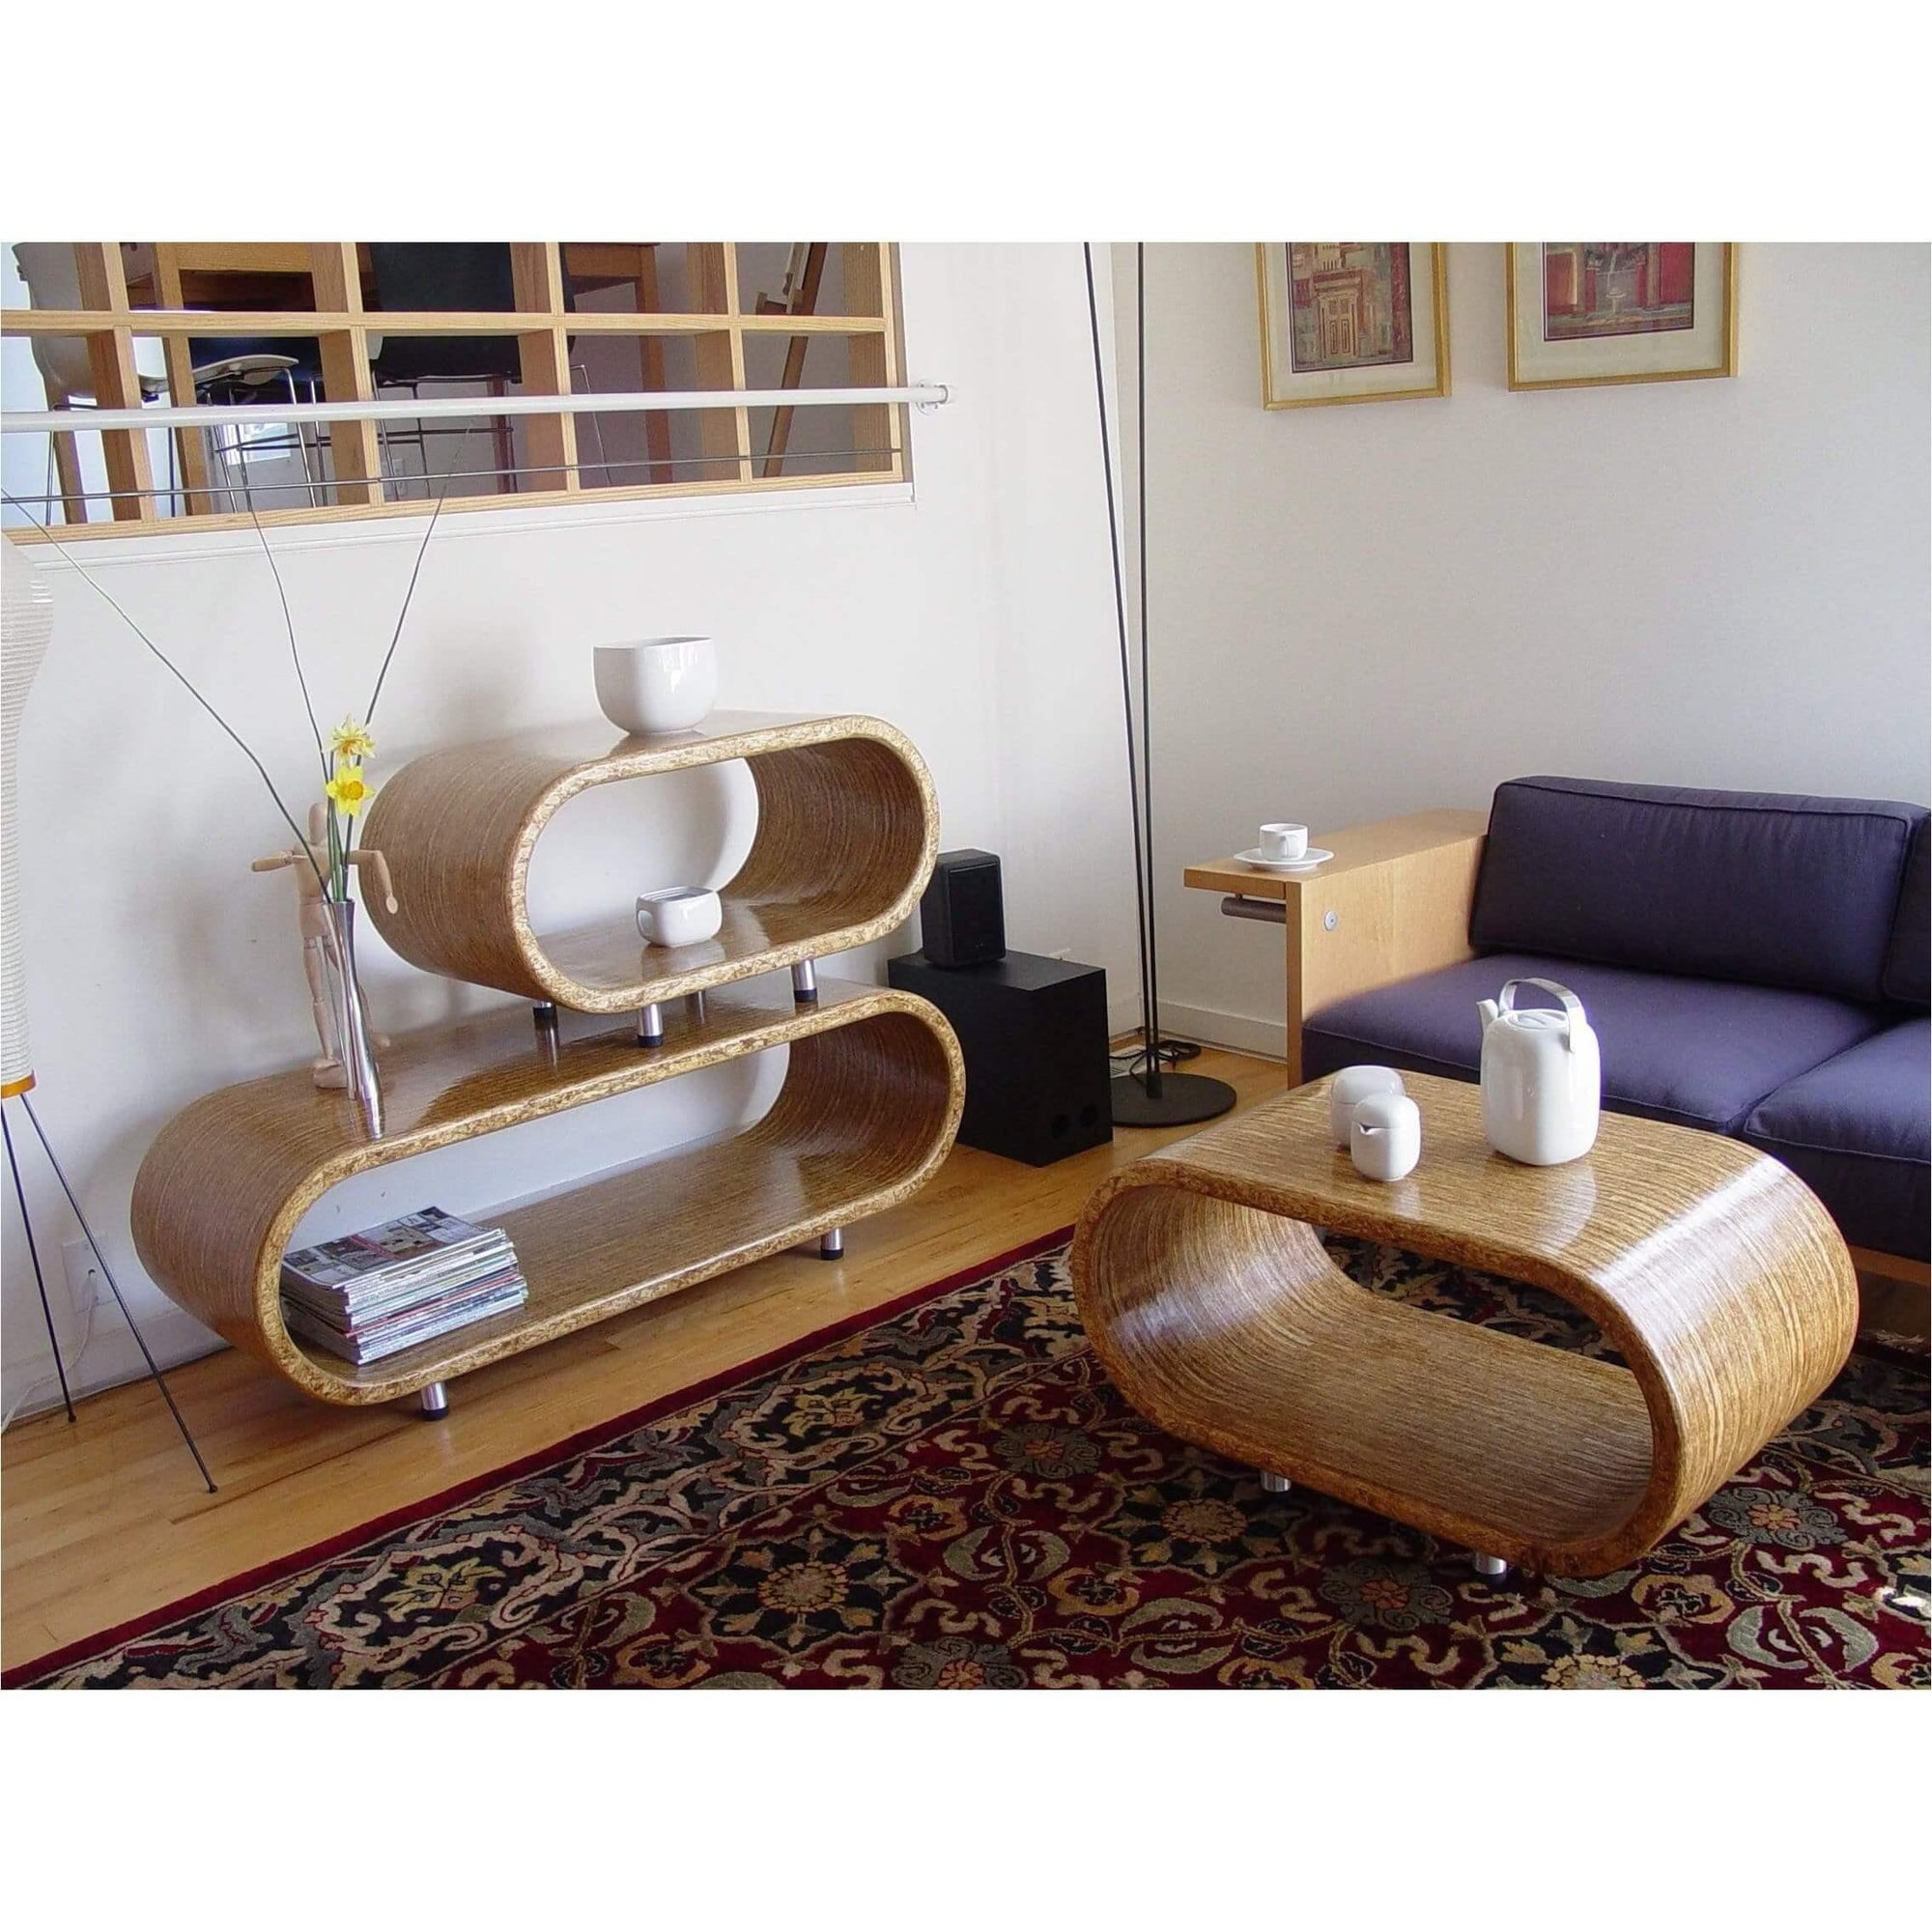 Grain modular furniture - Curated - Furniture - Reaching Quiet